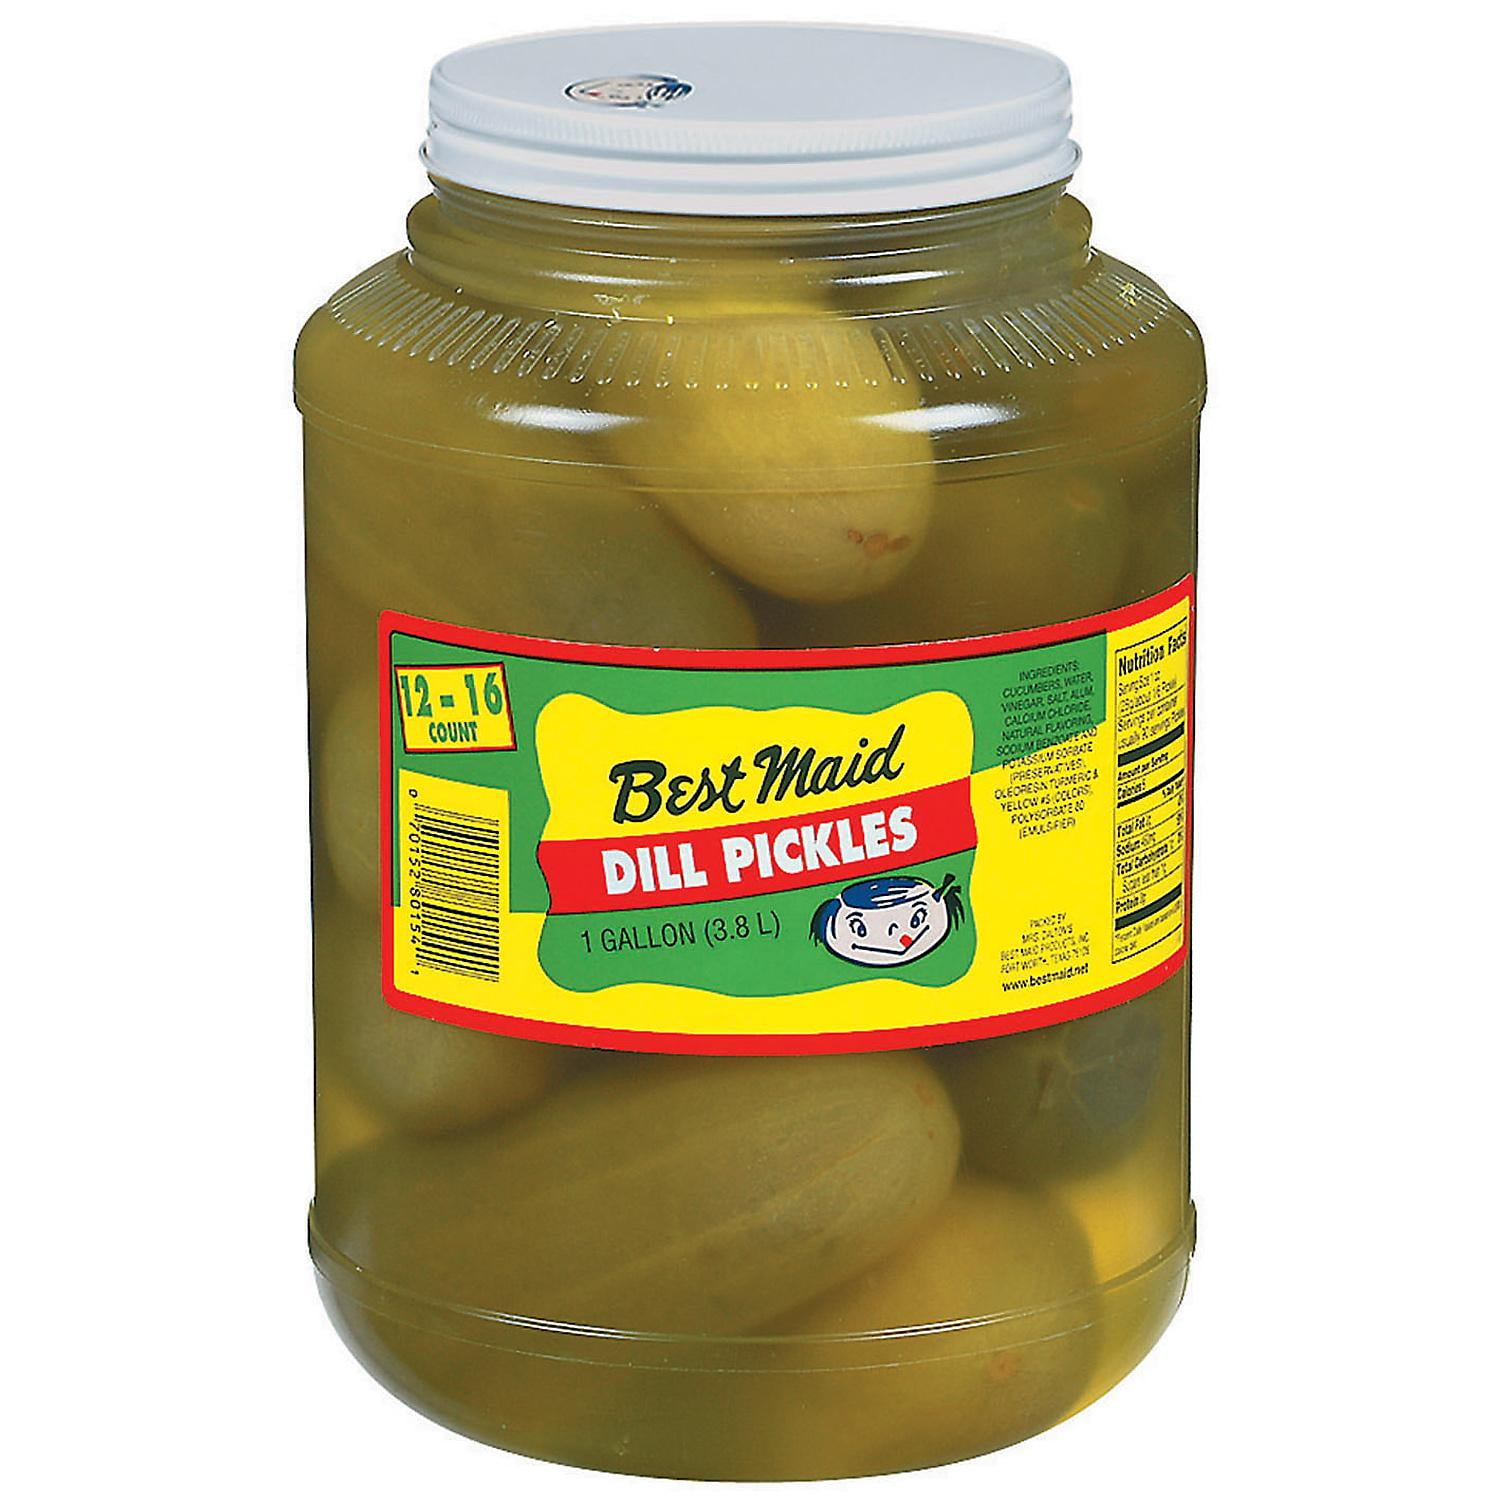 Best Maid Dill Pickles 1 gallon, Plastic Jar